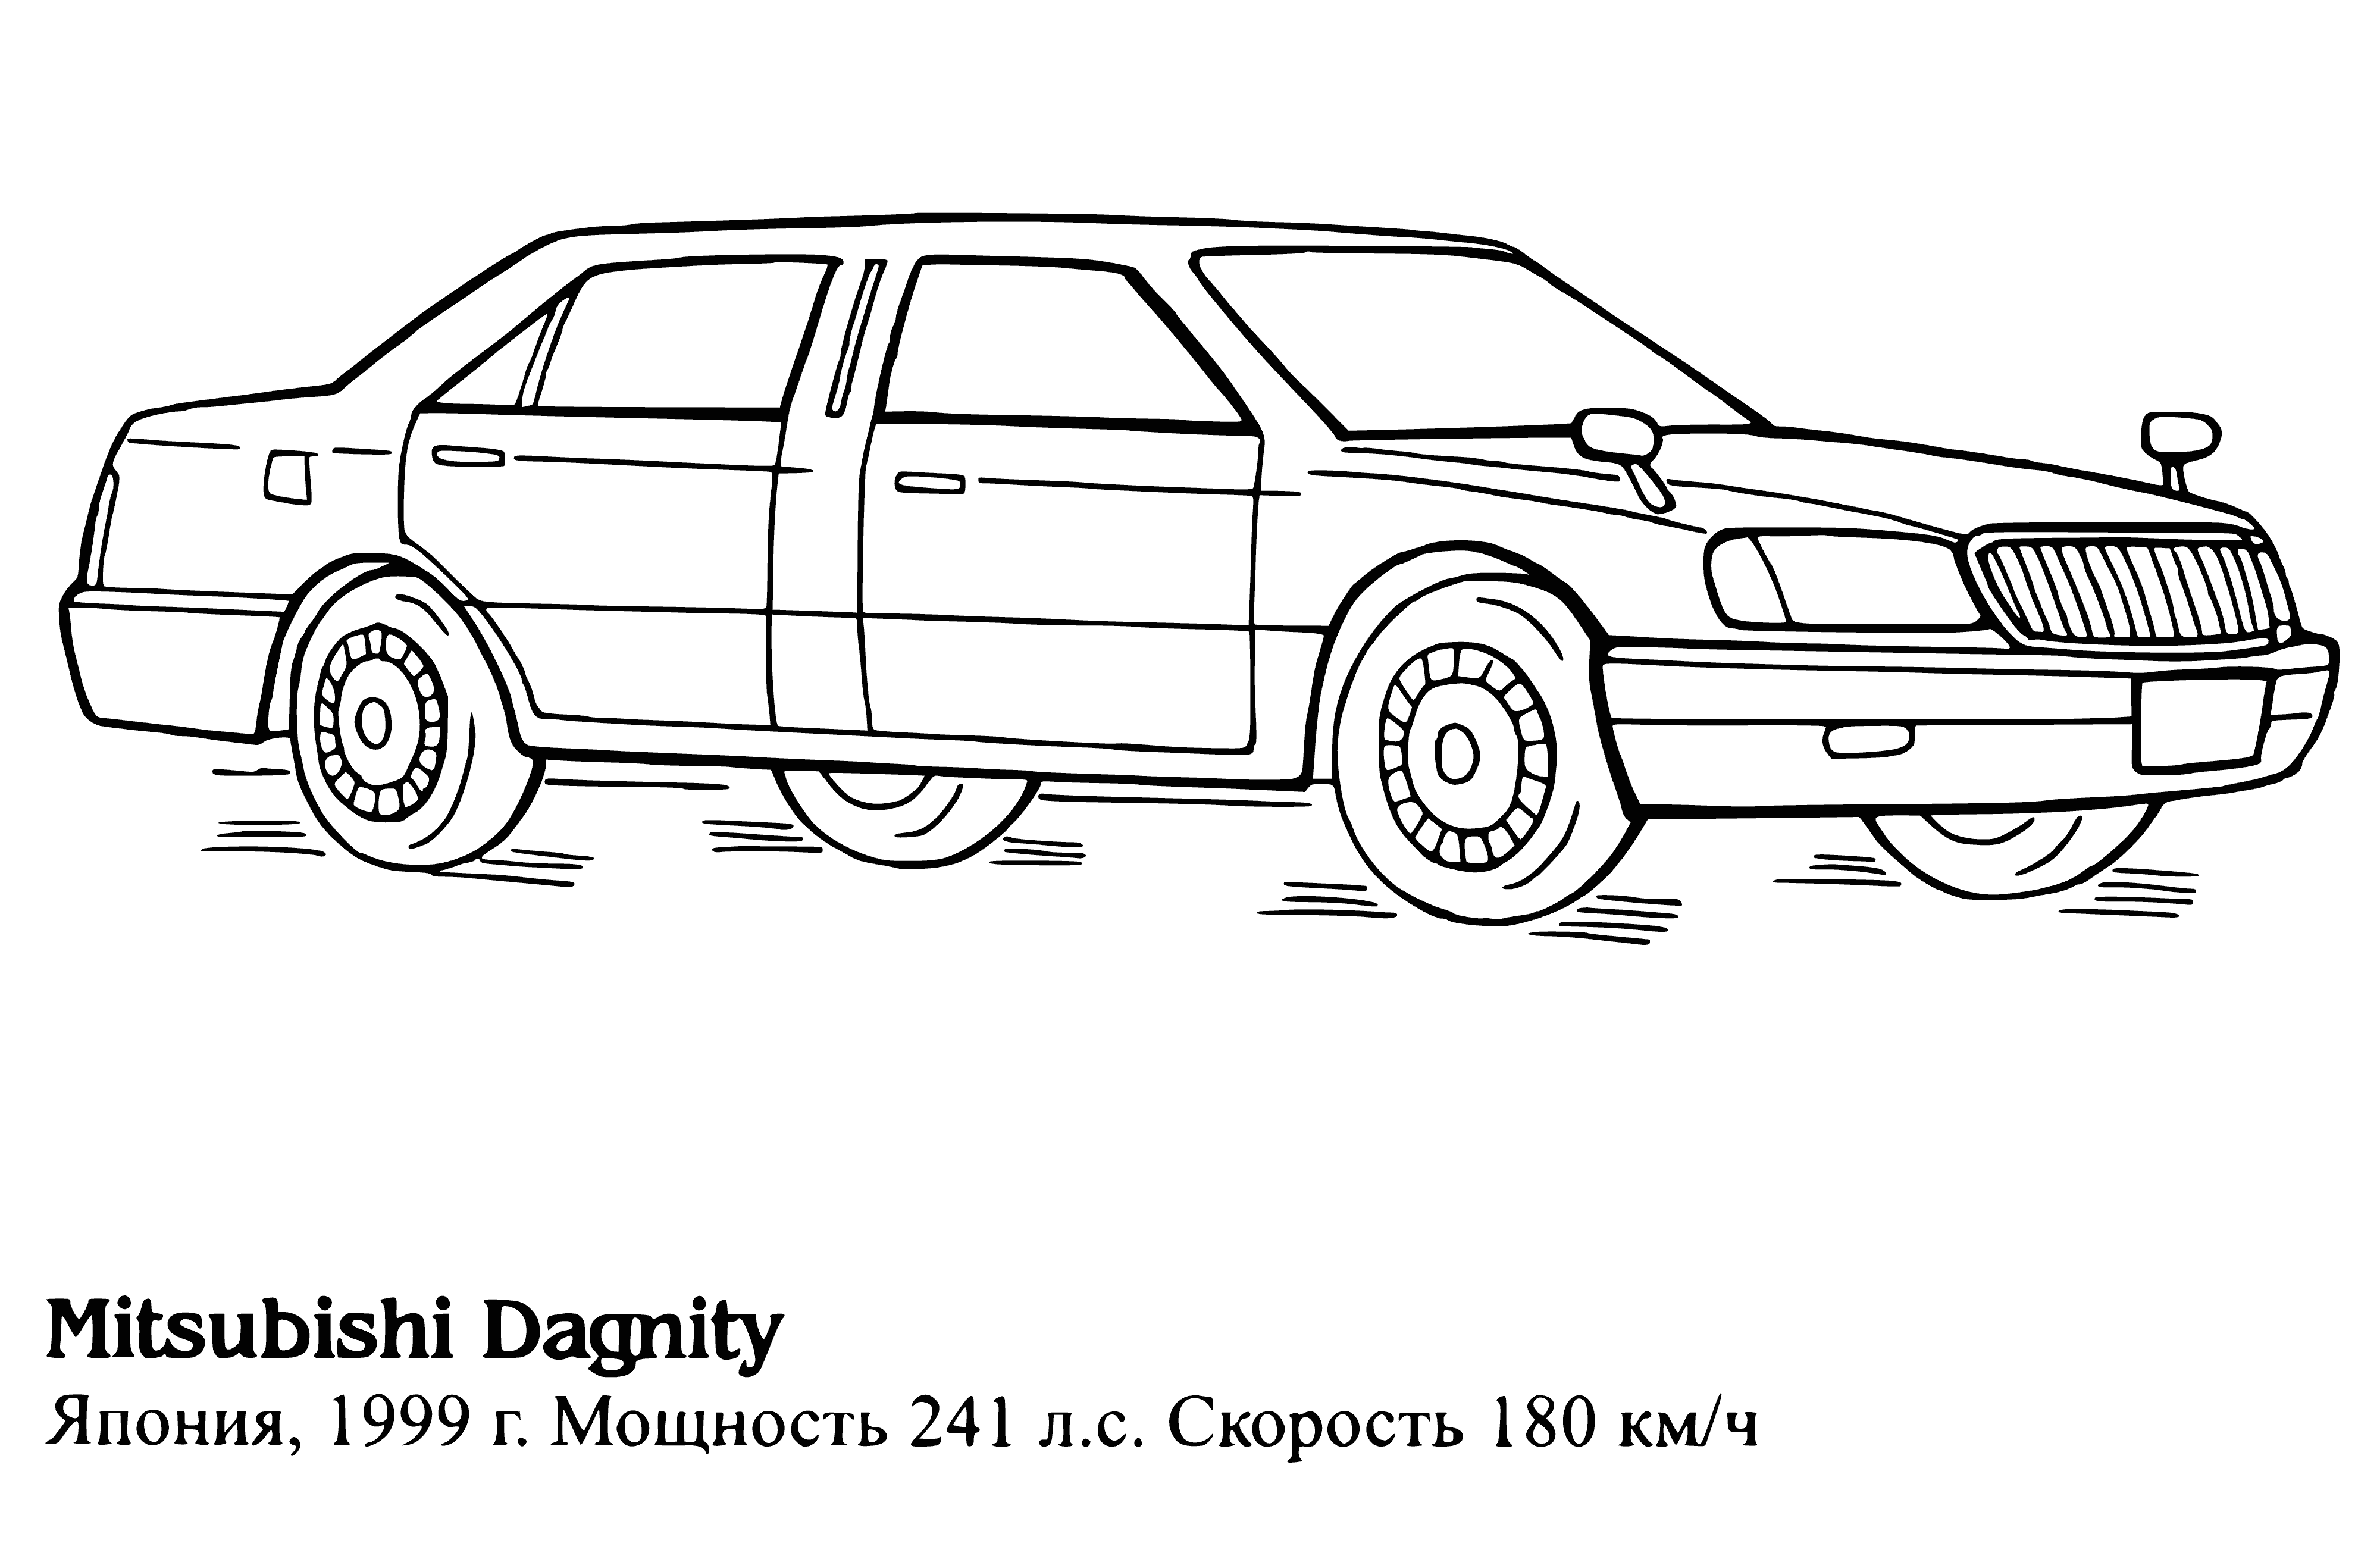 Mitsubishi Dagnity kolorowanka